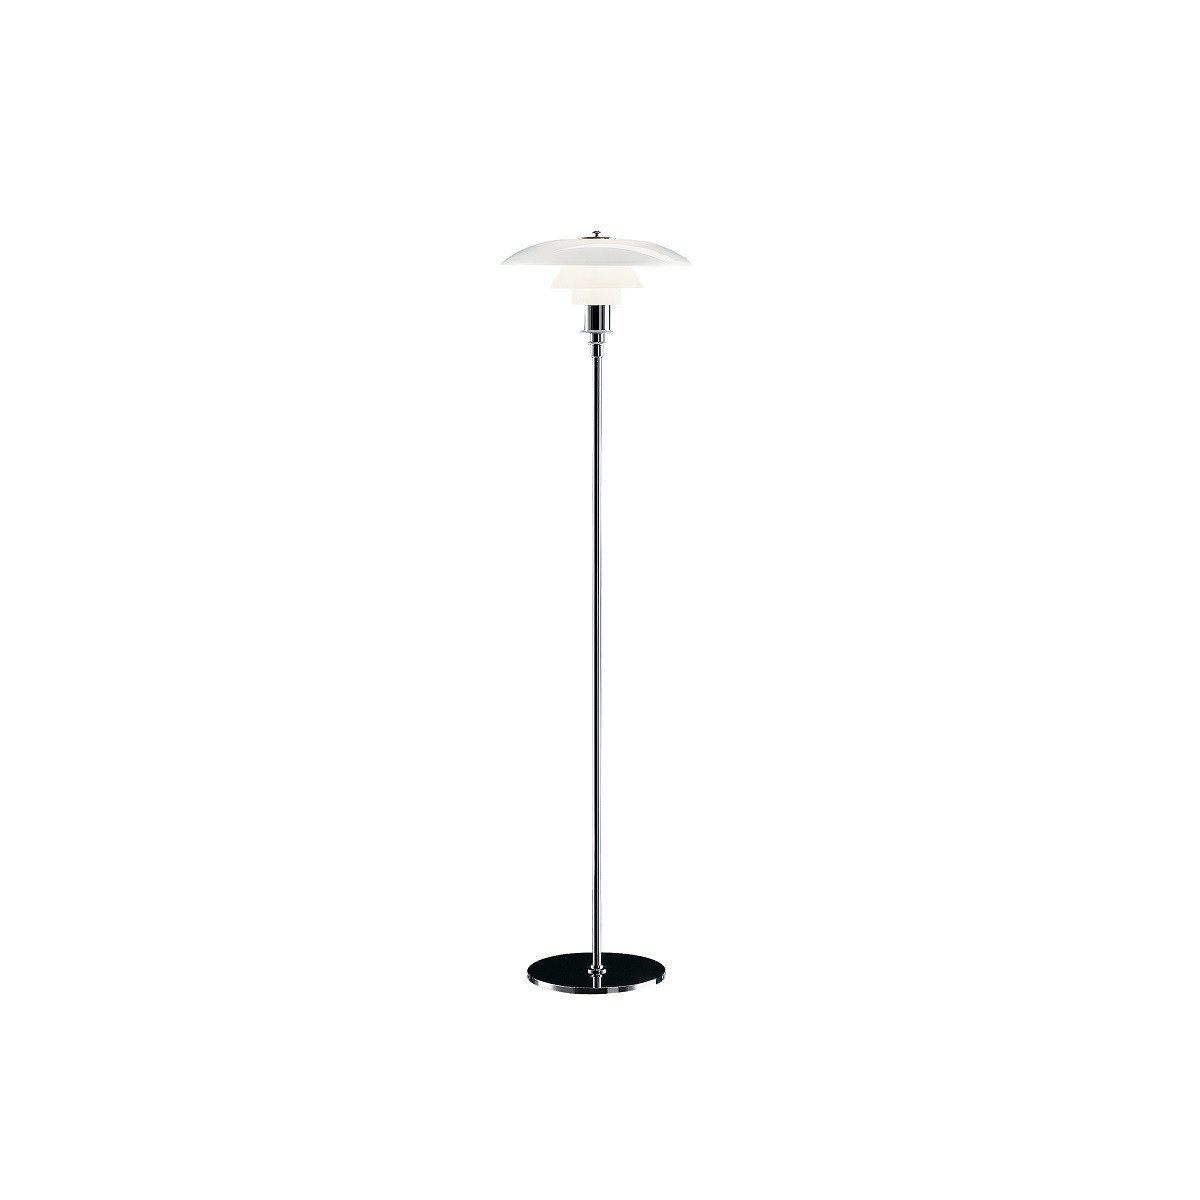 Louis Poulsen pH 31/2 21/2 podlahová lampa s vysokým leskem Chrome